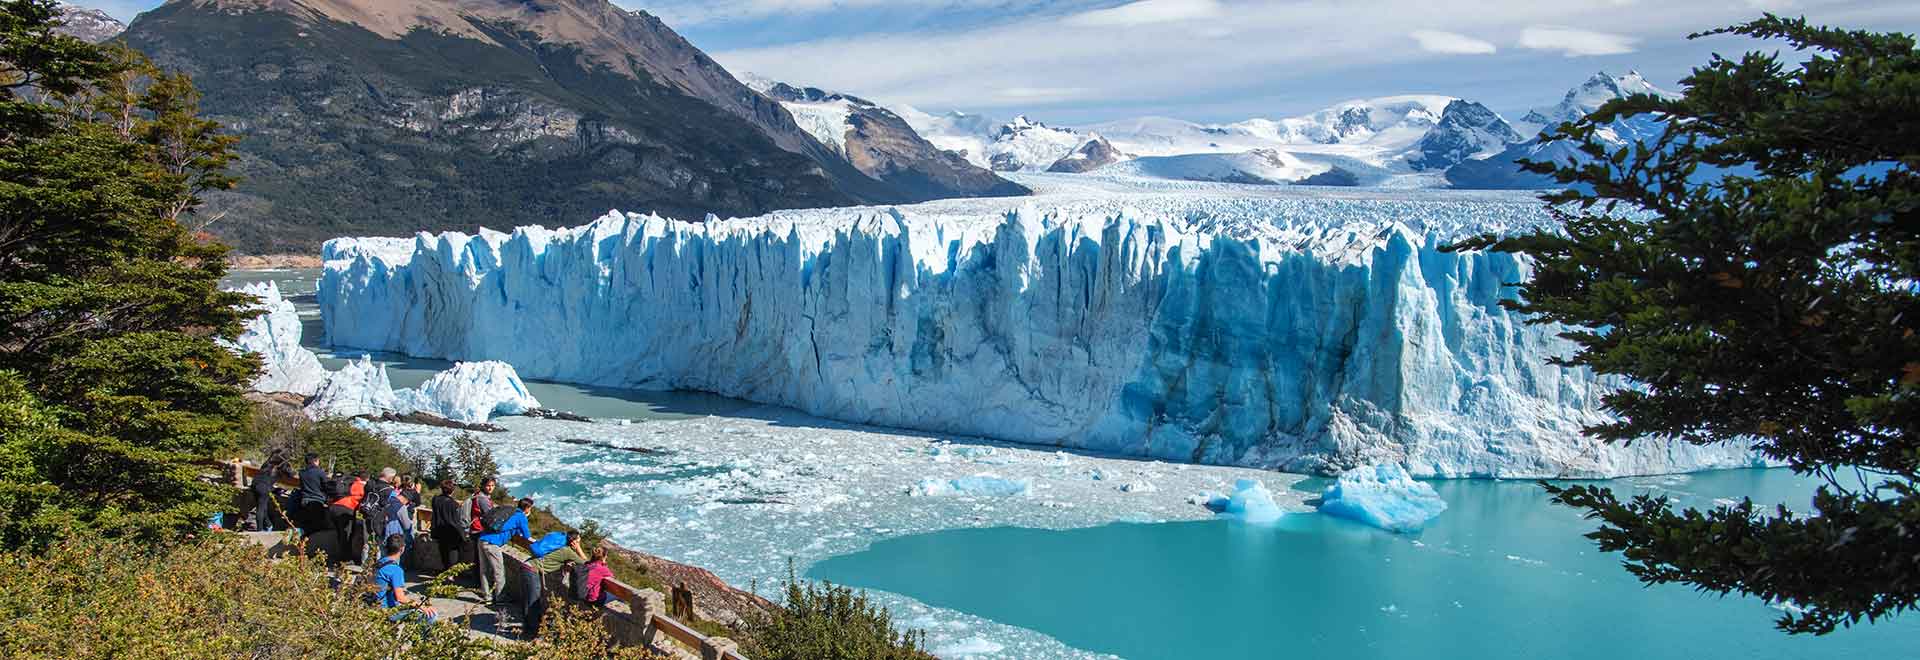 Americas Argentina Perito Moreno Glacier MH